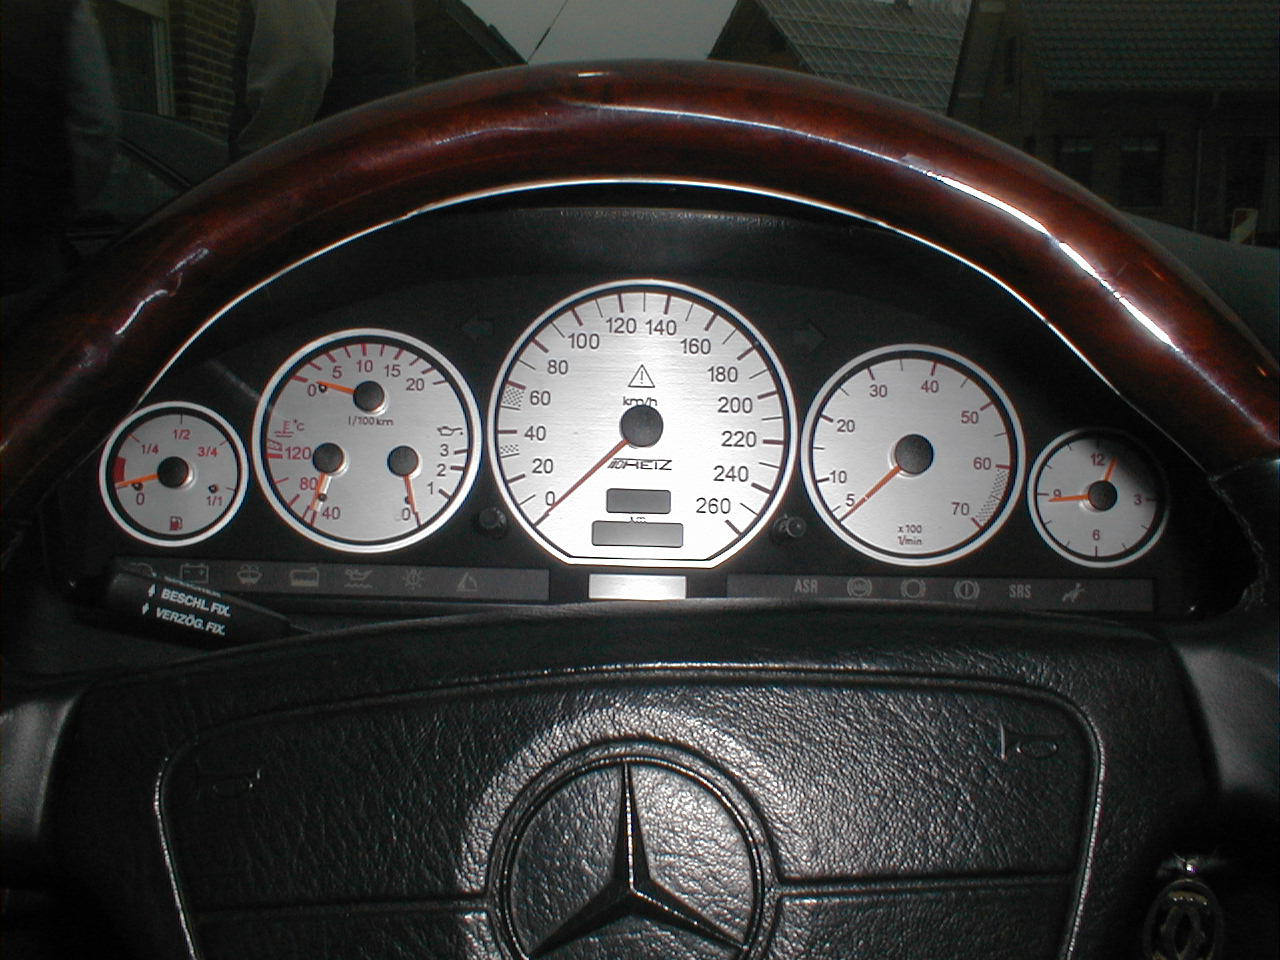 Discos de tacómetro/dial faces mercedes benz w140 r129 a partir de 2001/mph-multaránpor 